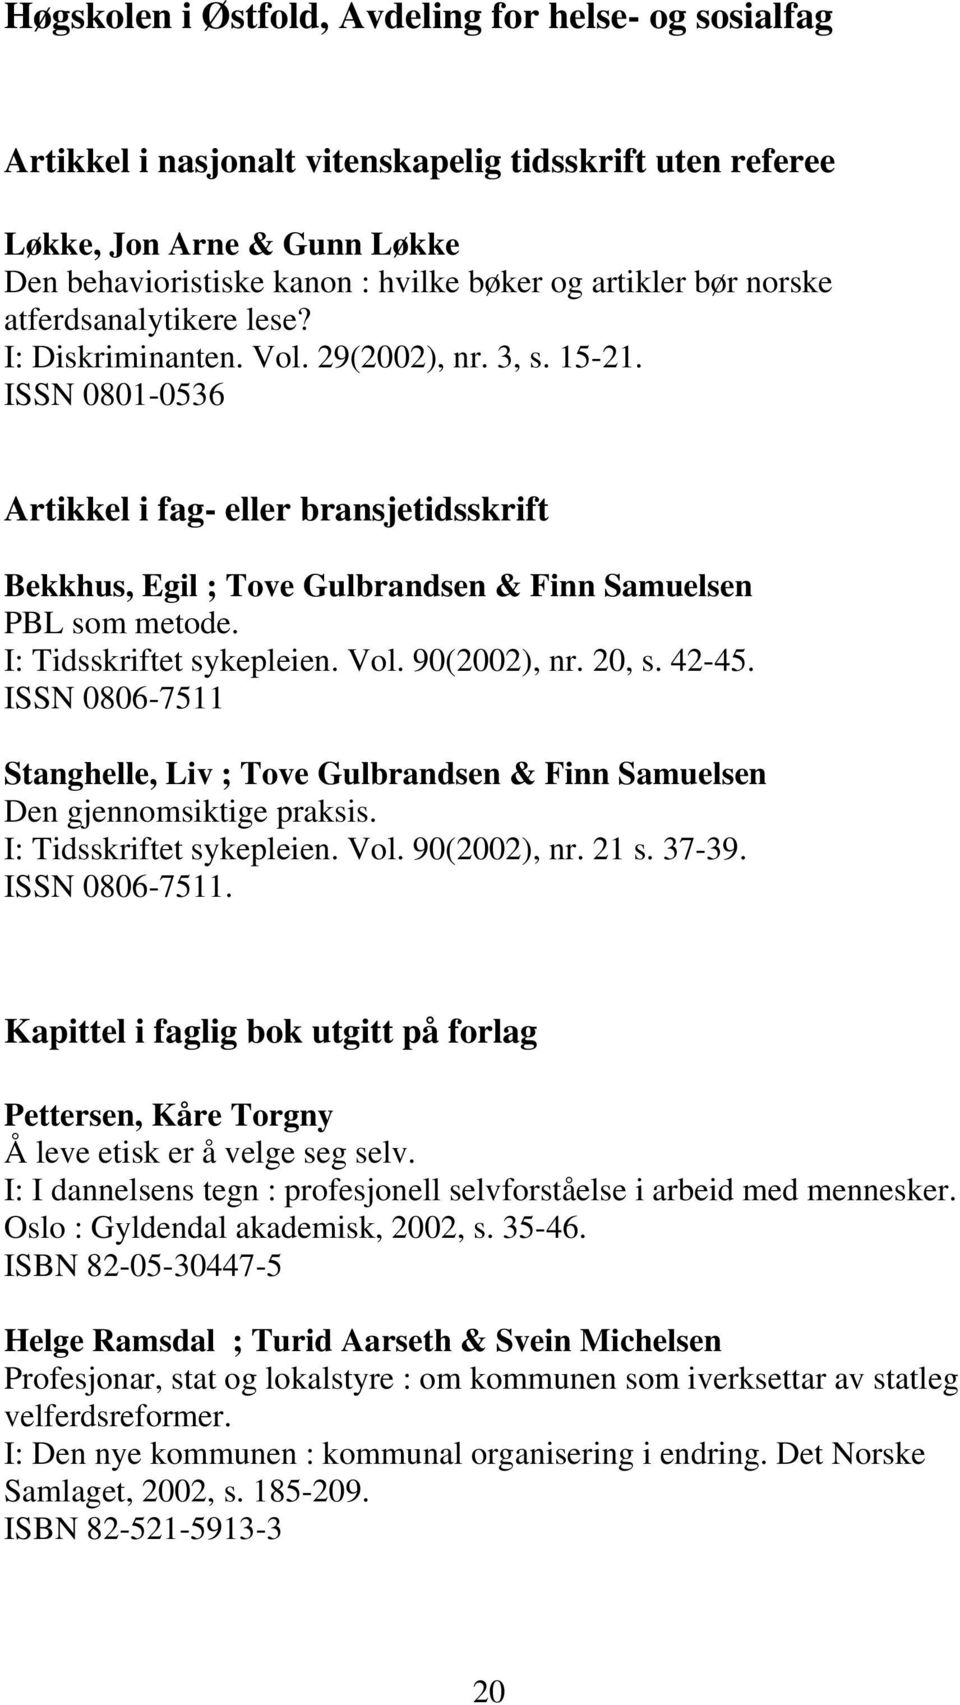 ISSN 0801-0536 Artikkel i fag- eller bransjetidsskrift Bekkhus, Egil ; Tove Gulbrandsen & Finn Samuelsen PBL som metode. I: Tidsskriftet sykepleien. Vol. 90(2002), nr. 20, s. 42-45.